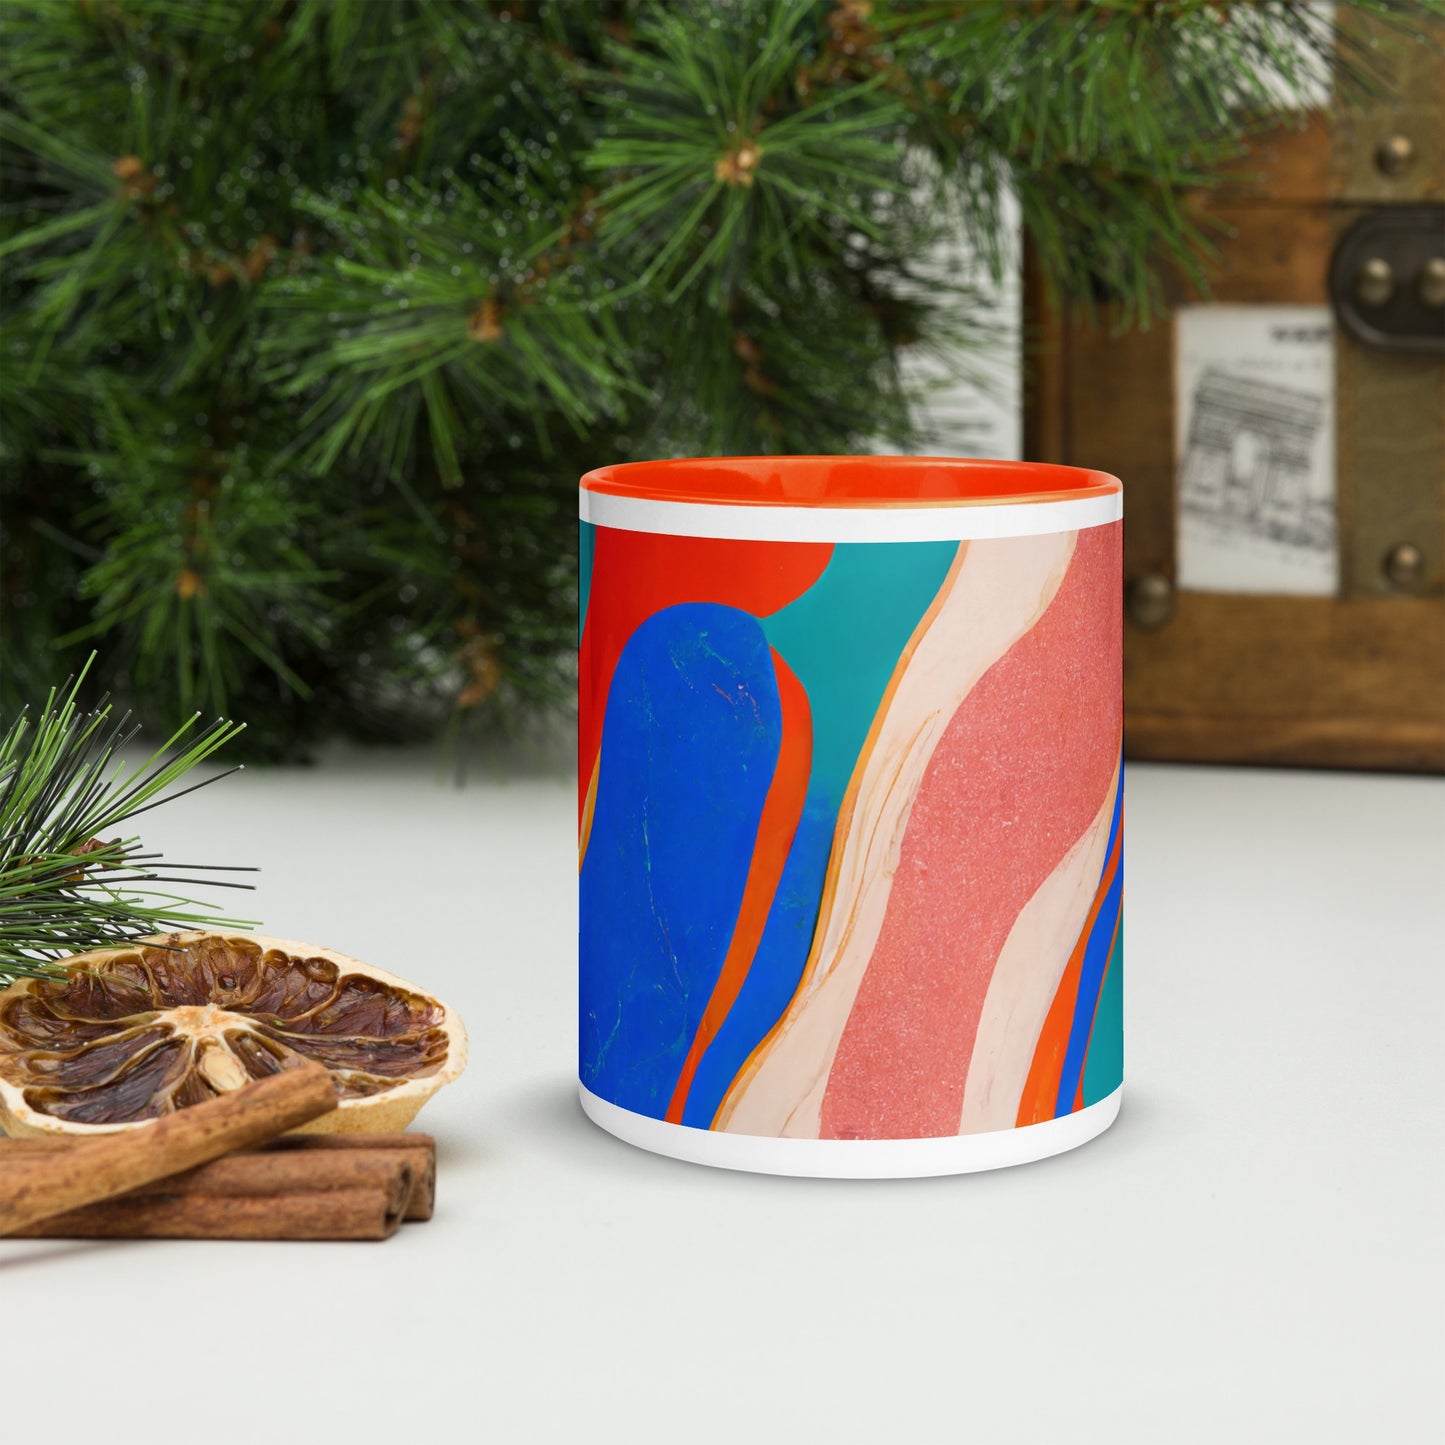 Marble Wonder Ceramic Mug with Color Inside